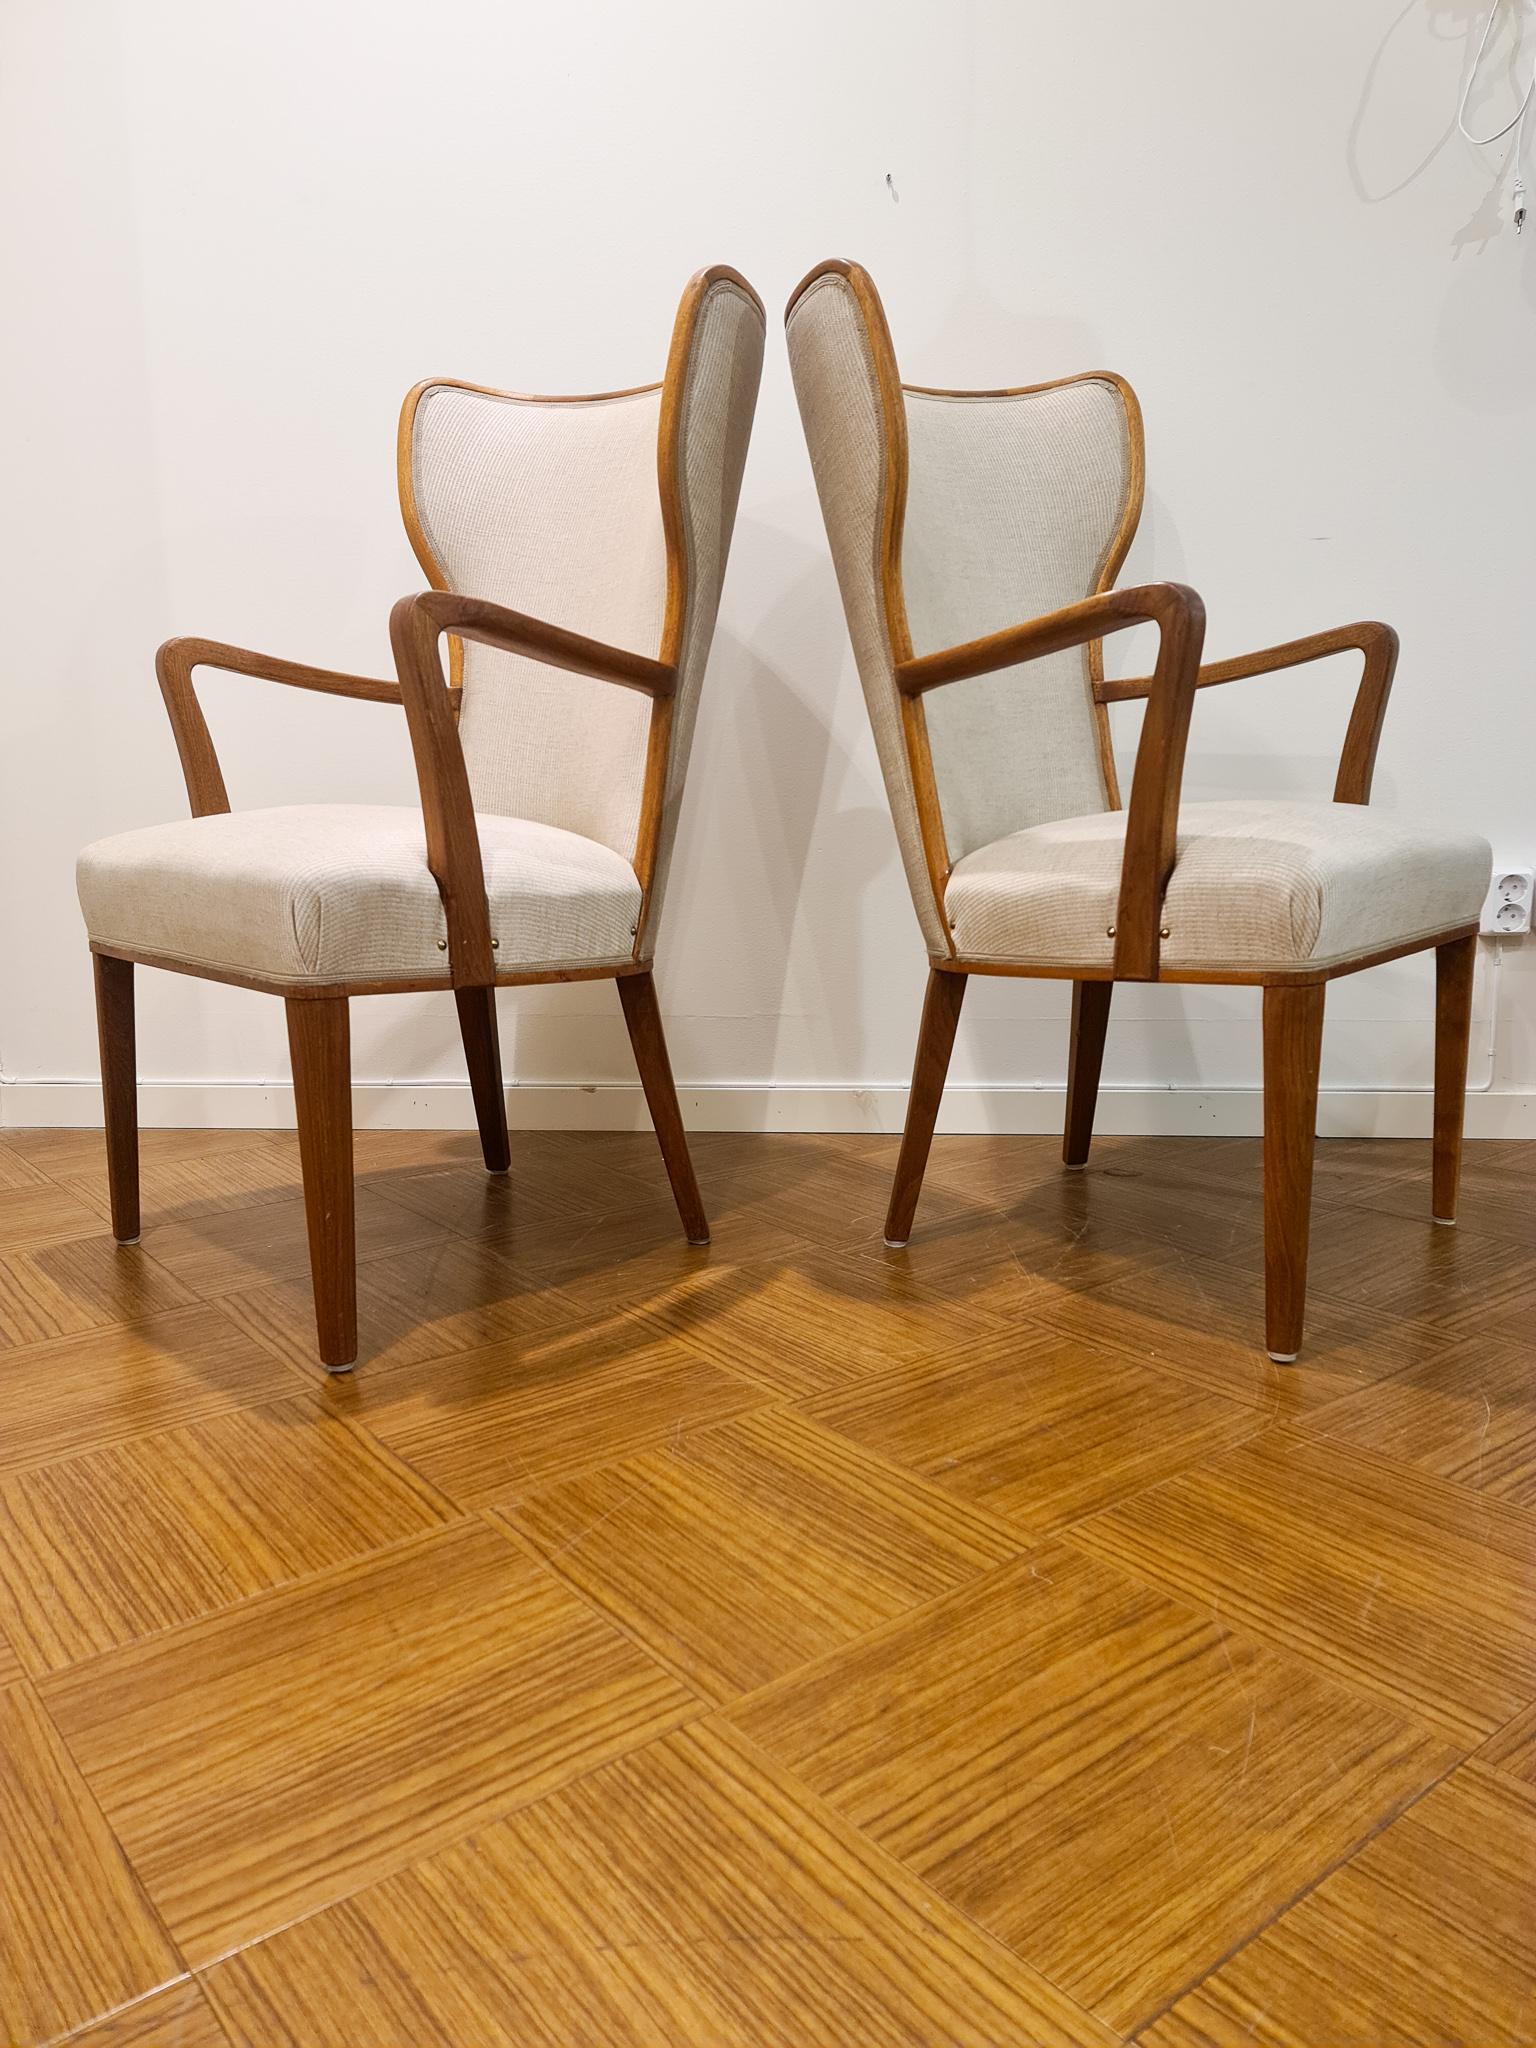 Ces chaises haut de gamme bien sculptées ont été produites au début des années 1940 pour AB Svenska Kontorsmöbler AB. Ils sont fabriqués en chêne huilé et ont un nouveau rembourrage. Le célèbre designer Axel Einar Hjort a travaillé sur les dessins